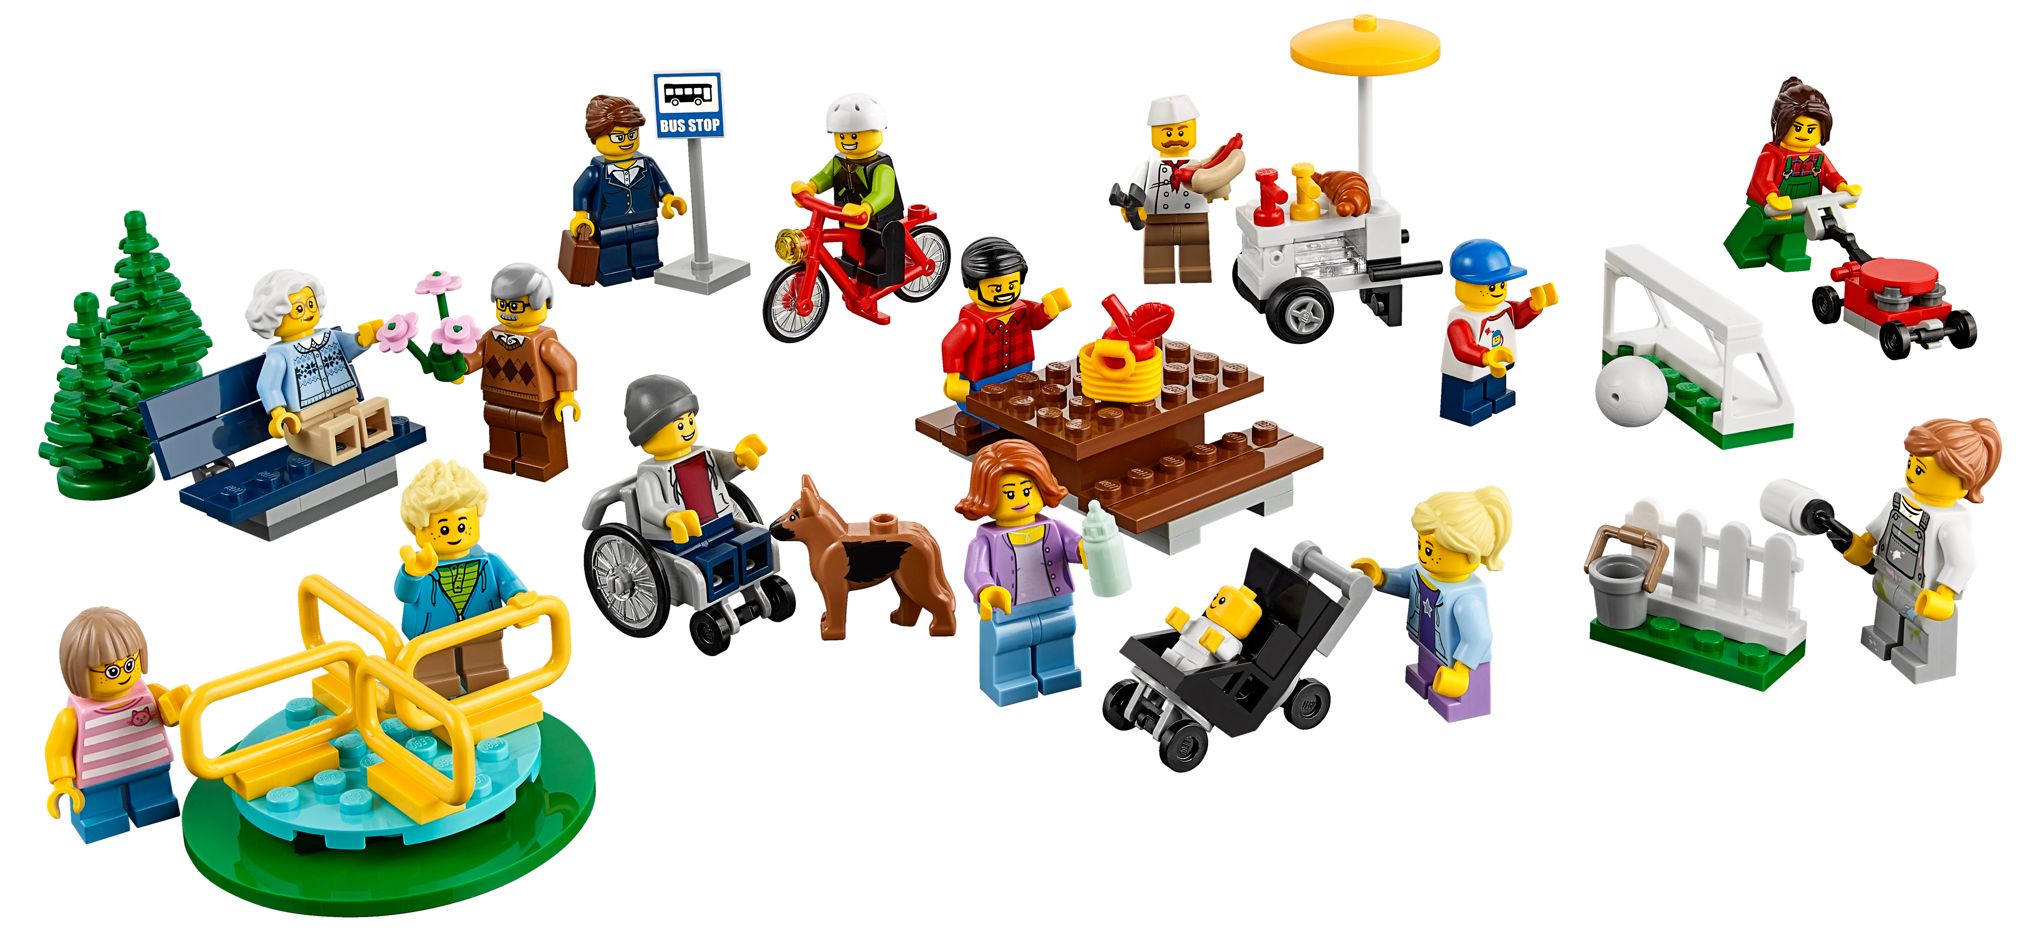 Les Trains Lego City - Le Comparatif pour Choisir son Jouet